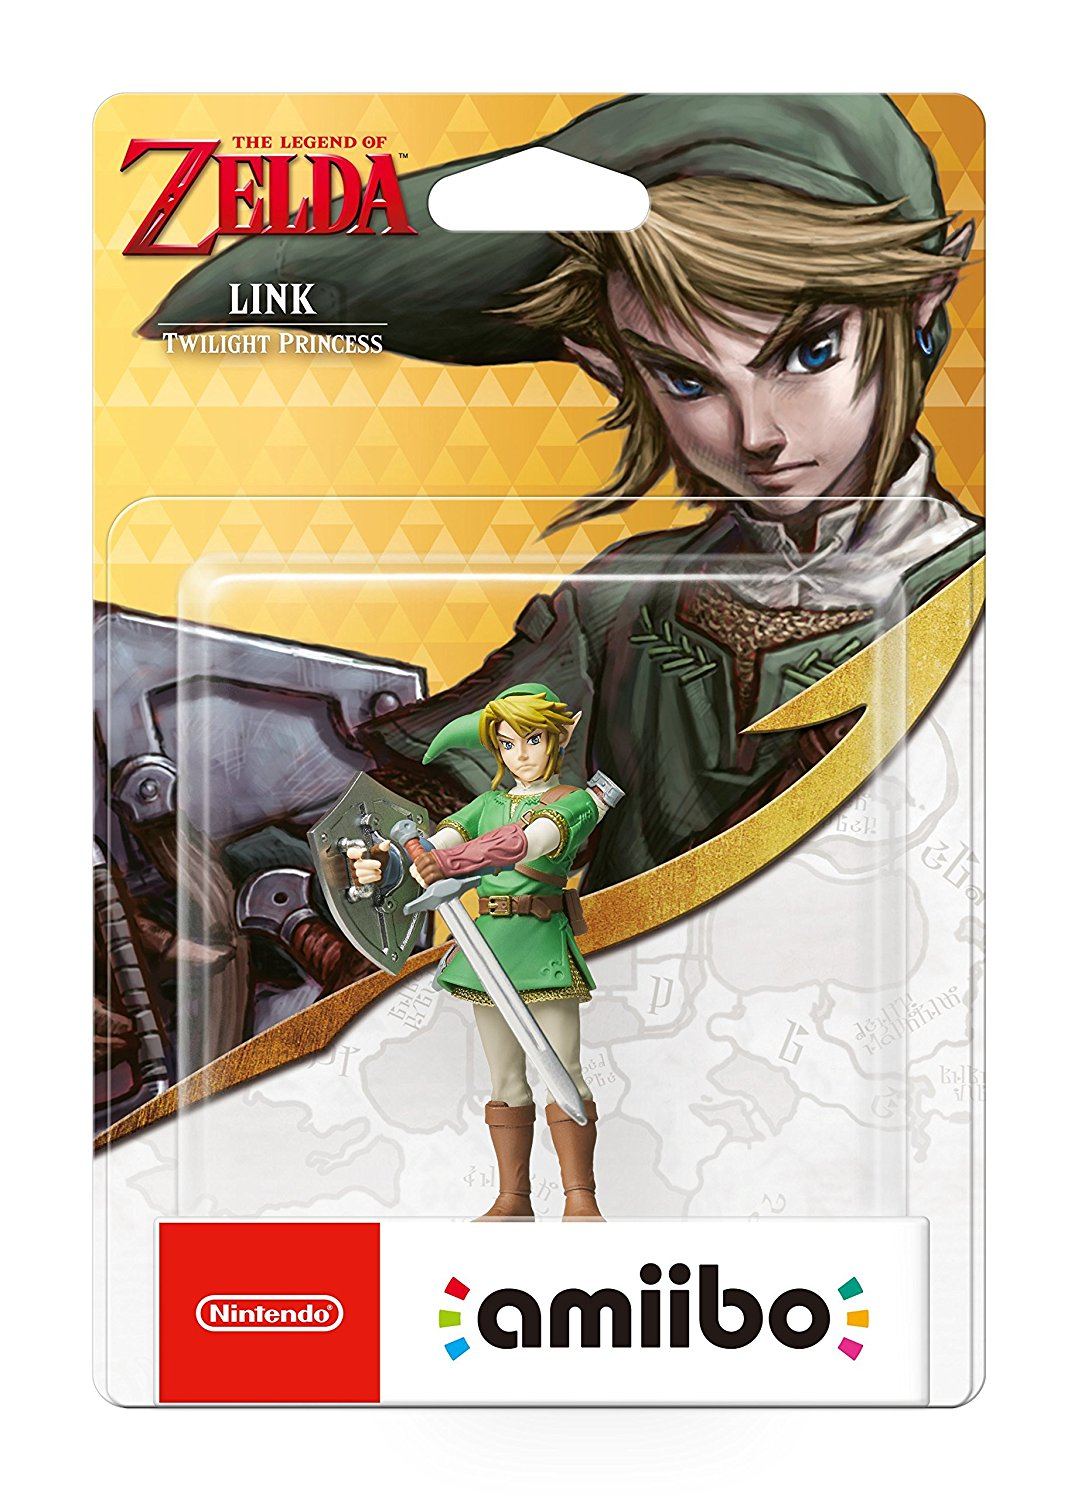 Amiibo Toon Link [Wind Waker] the legend of Zelda series Nintendo 3DS From  JP